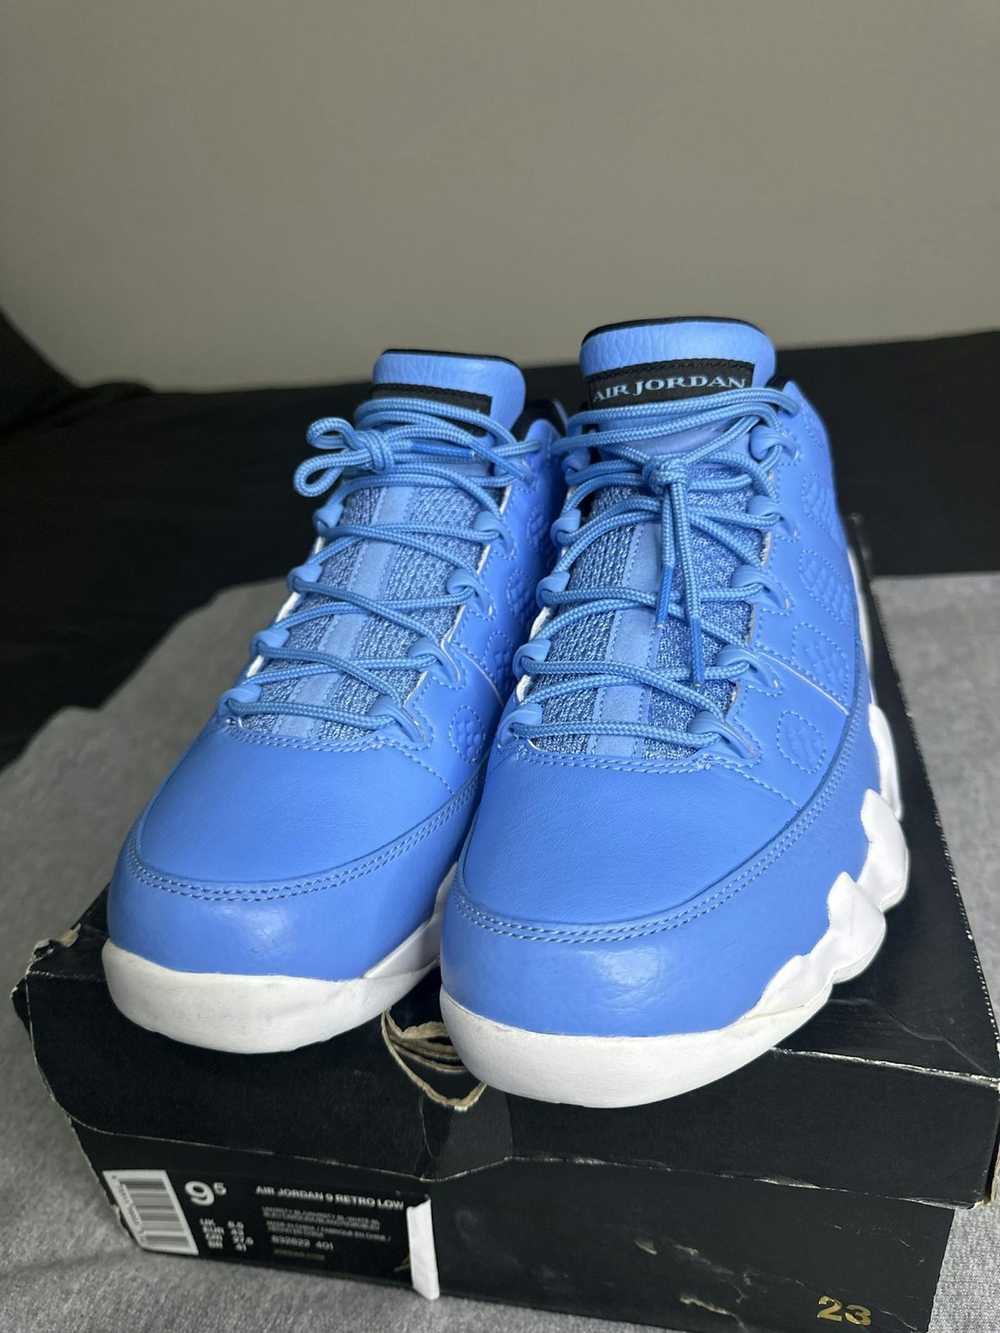 Jordan Brand × Nike Jordan 9 Retro “Pantone” - image 1